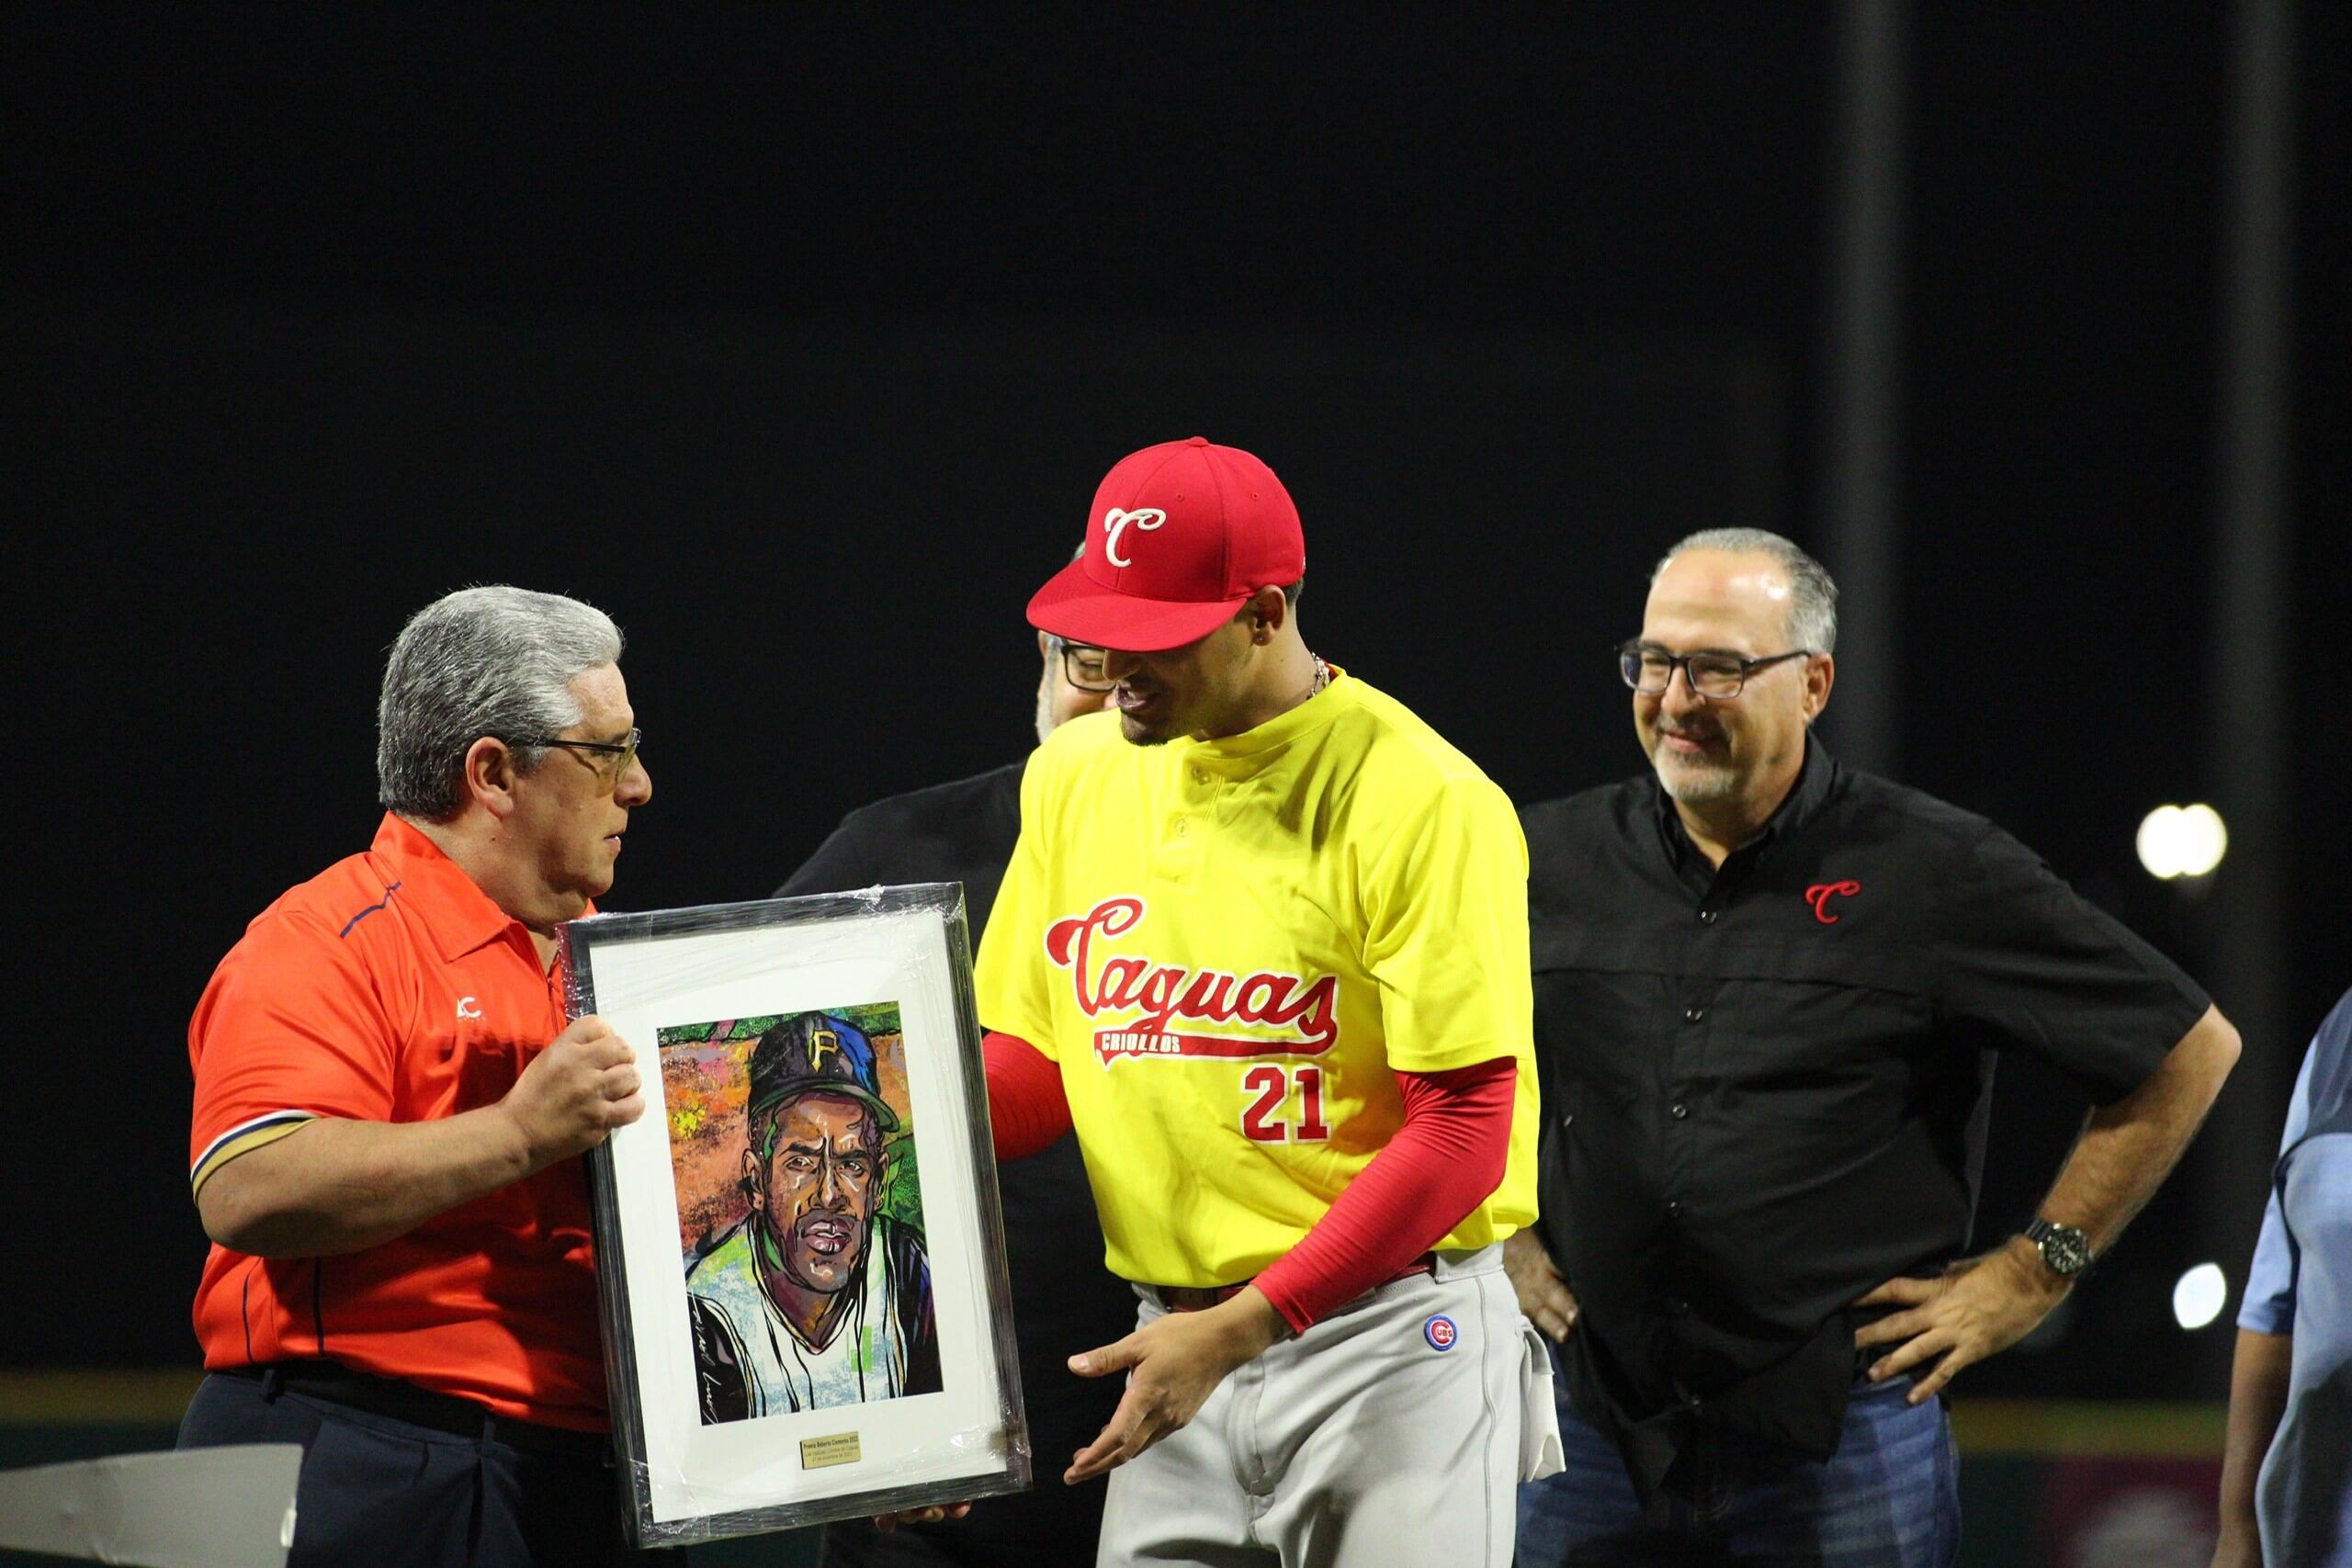 Luis Vázquez recibiendo el premio Roberto Clemente de la mano del presidente de la LBPRC, Juan Flores Galarza.